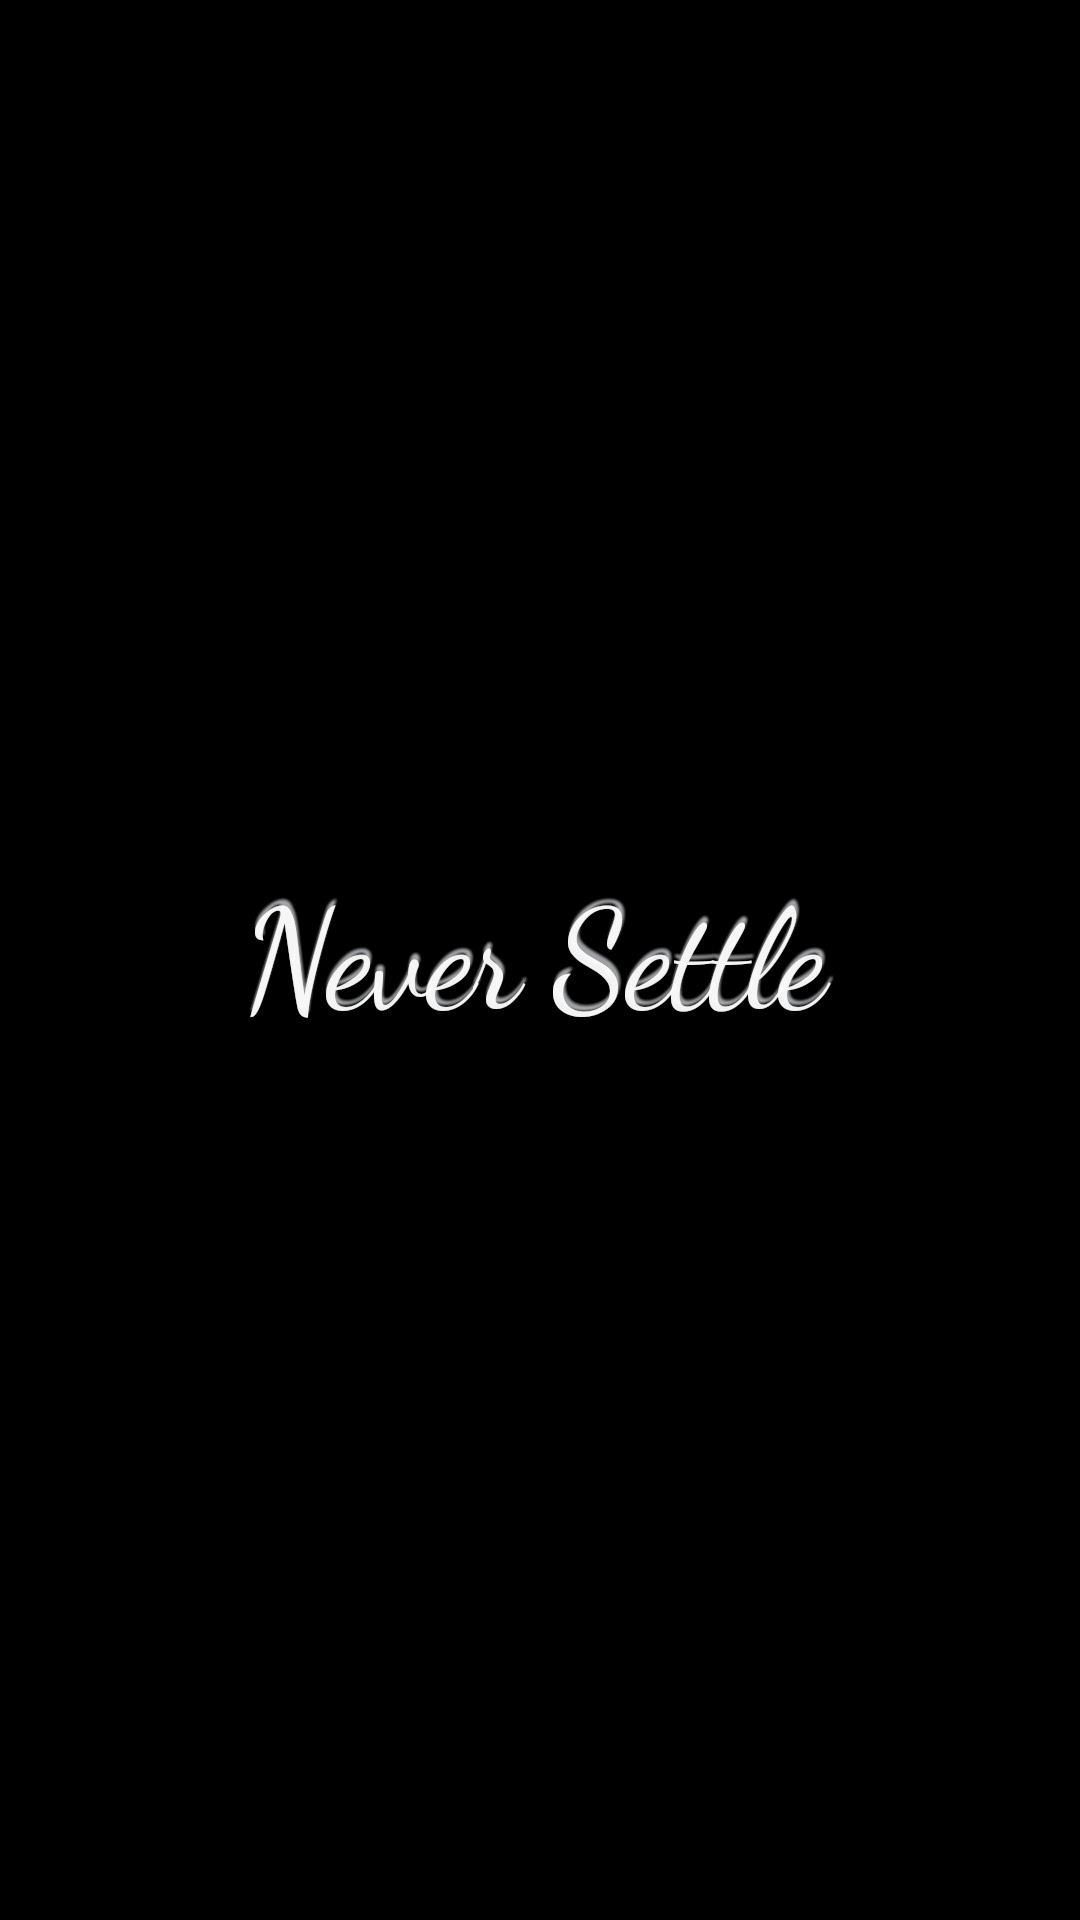 Never Settle mobile wallpaper (1920x1080). Never settle